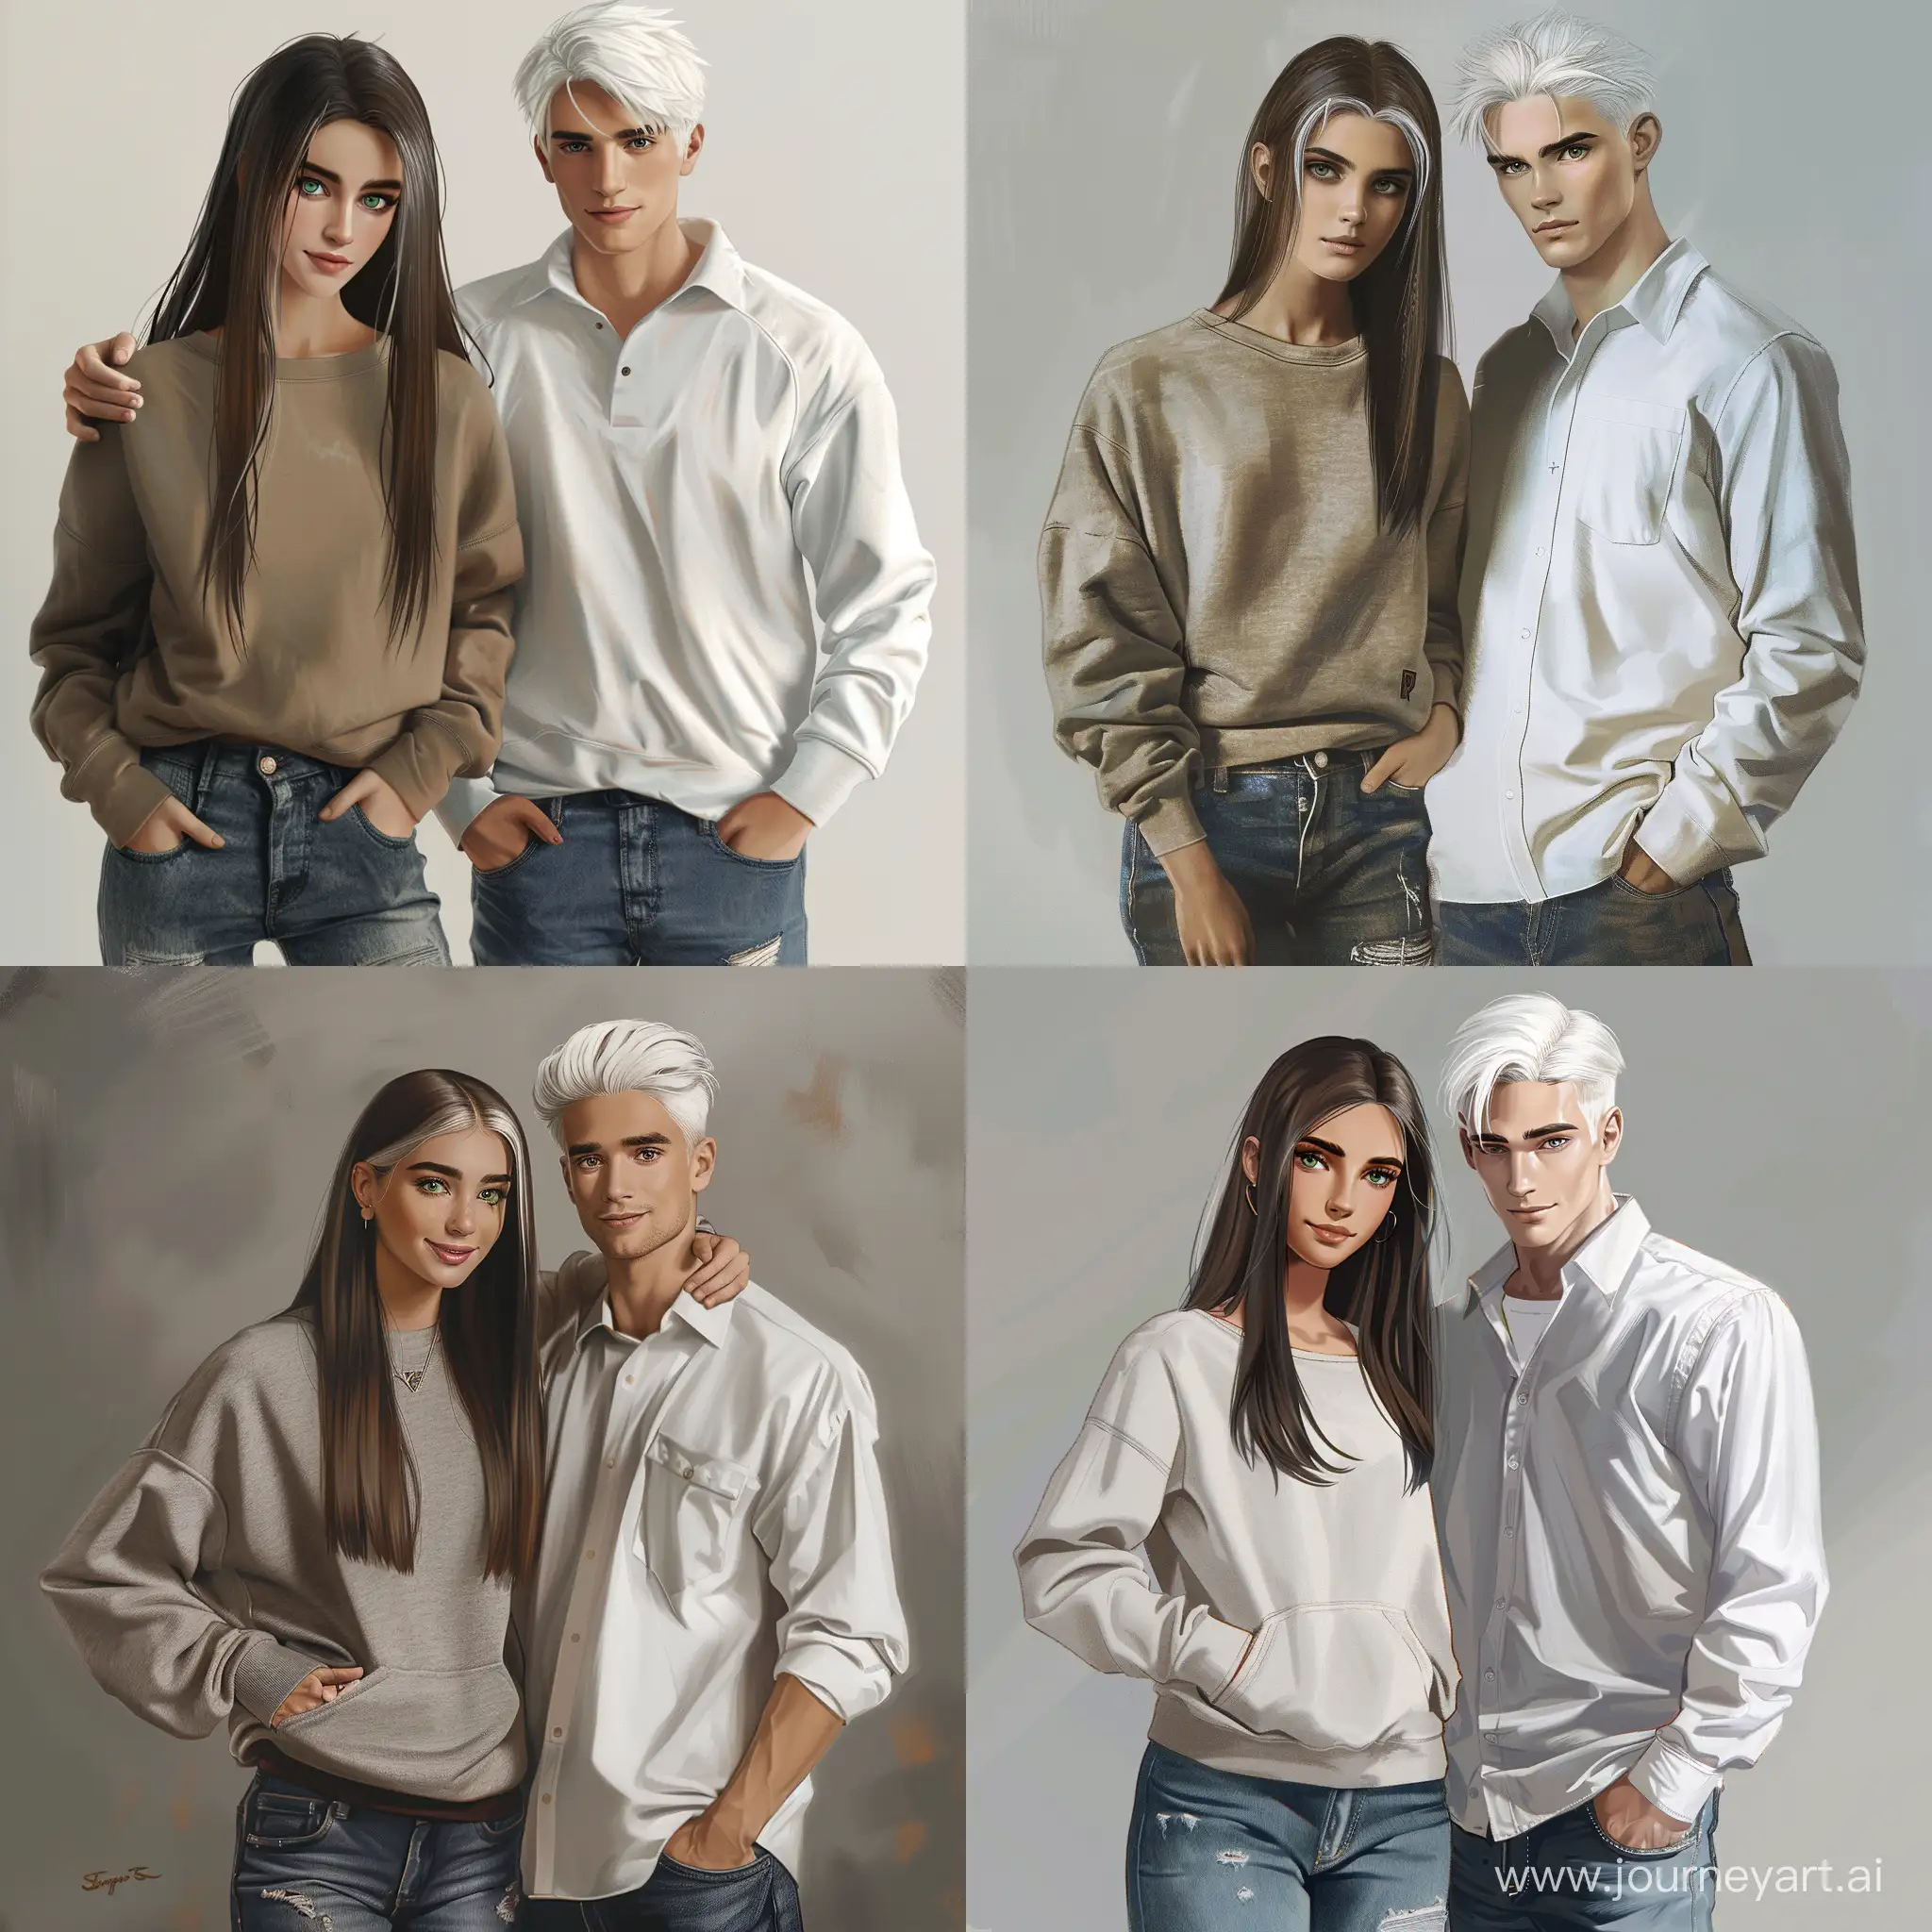 Teenage-Couple-in-Casual-Attire-Realistic-Art-Portrait